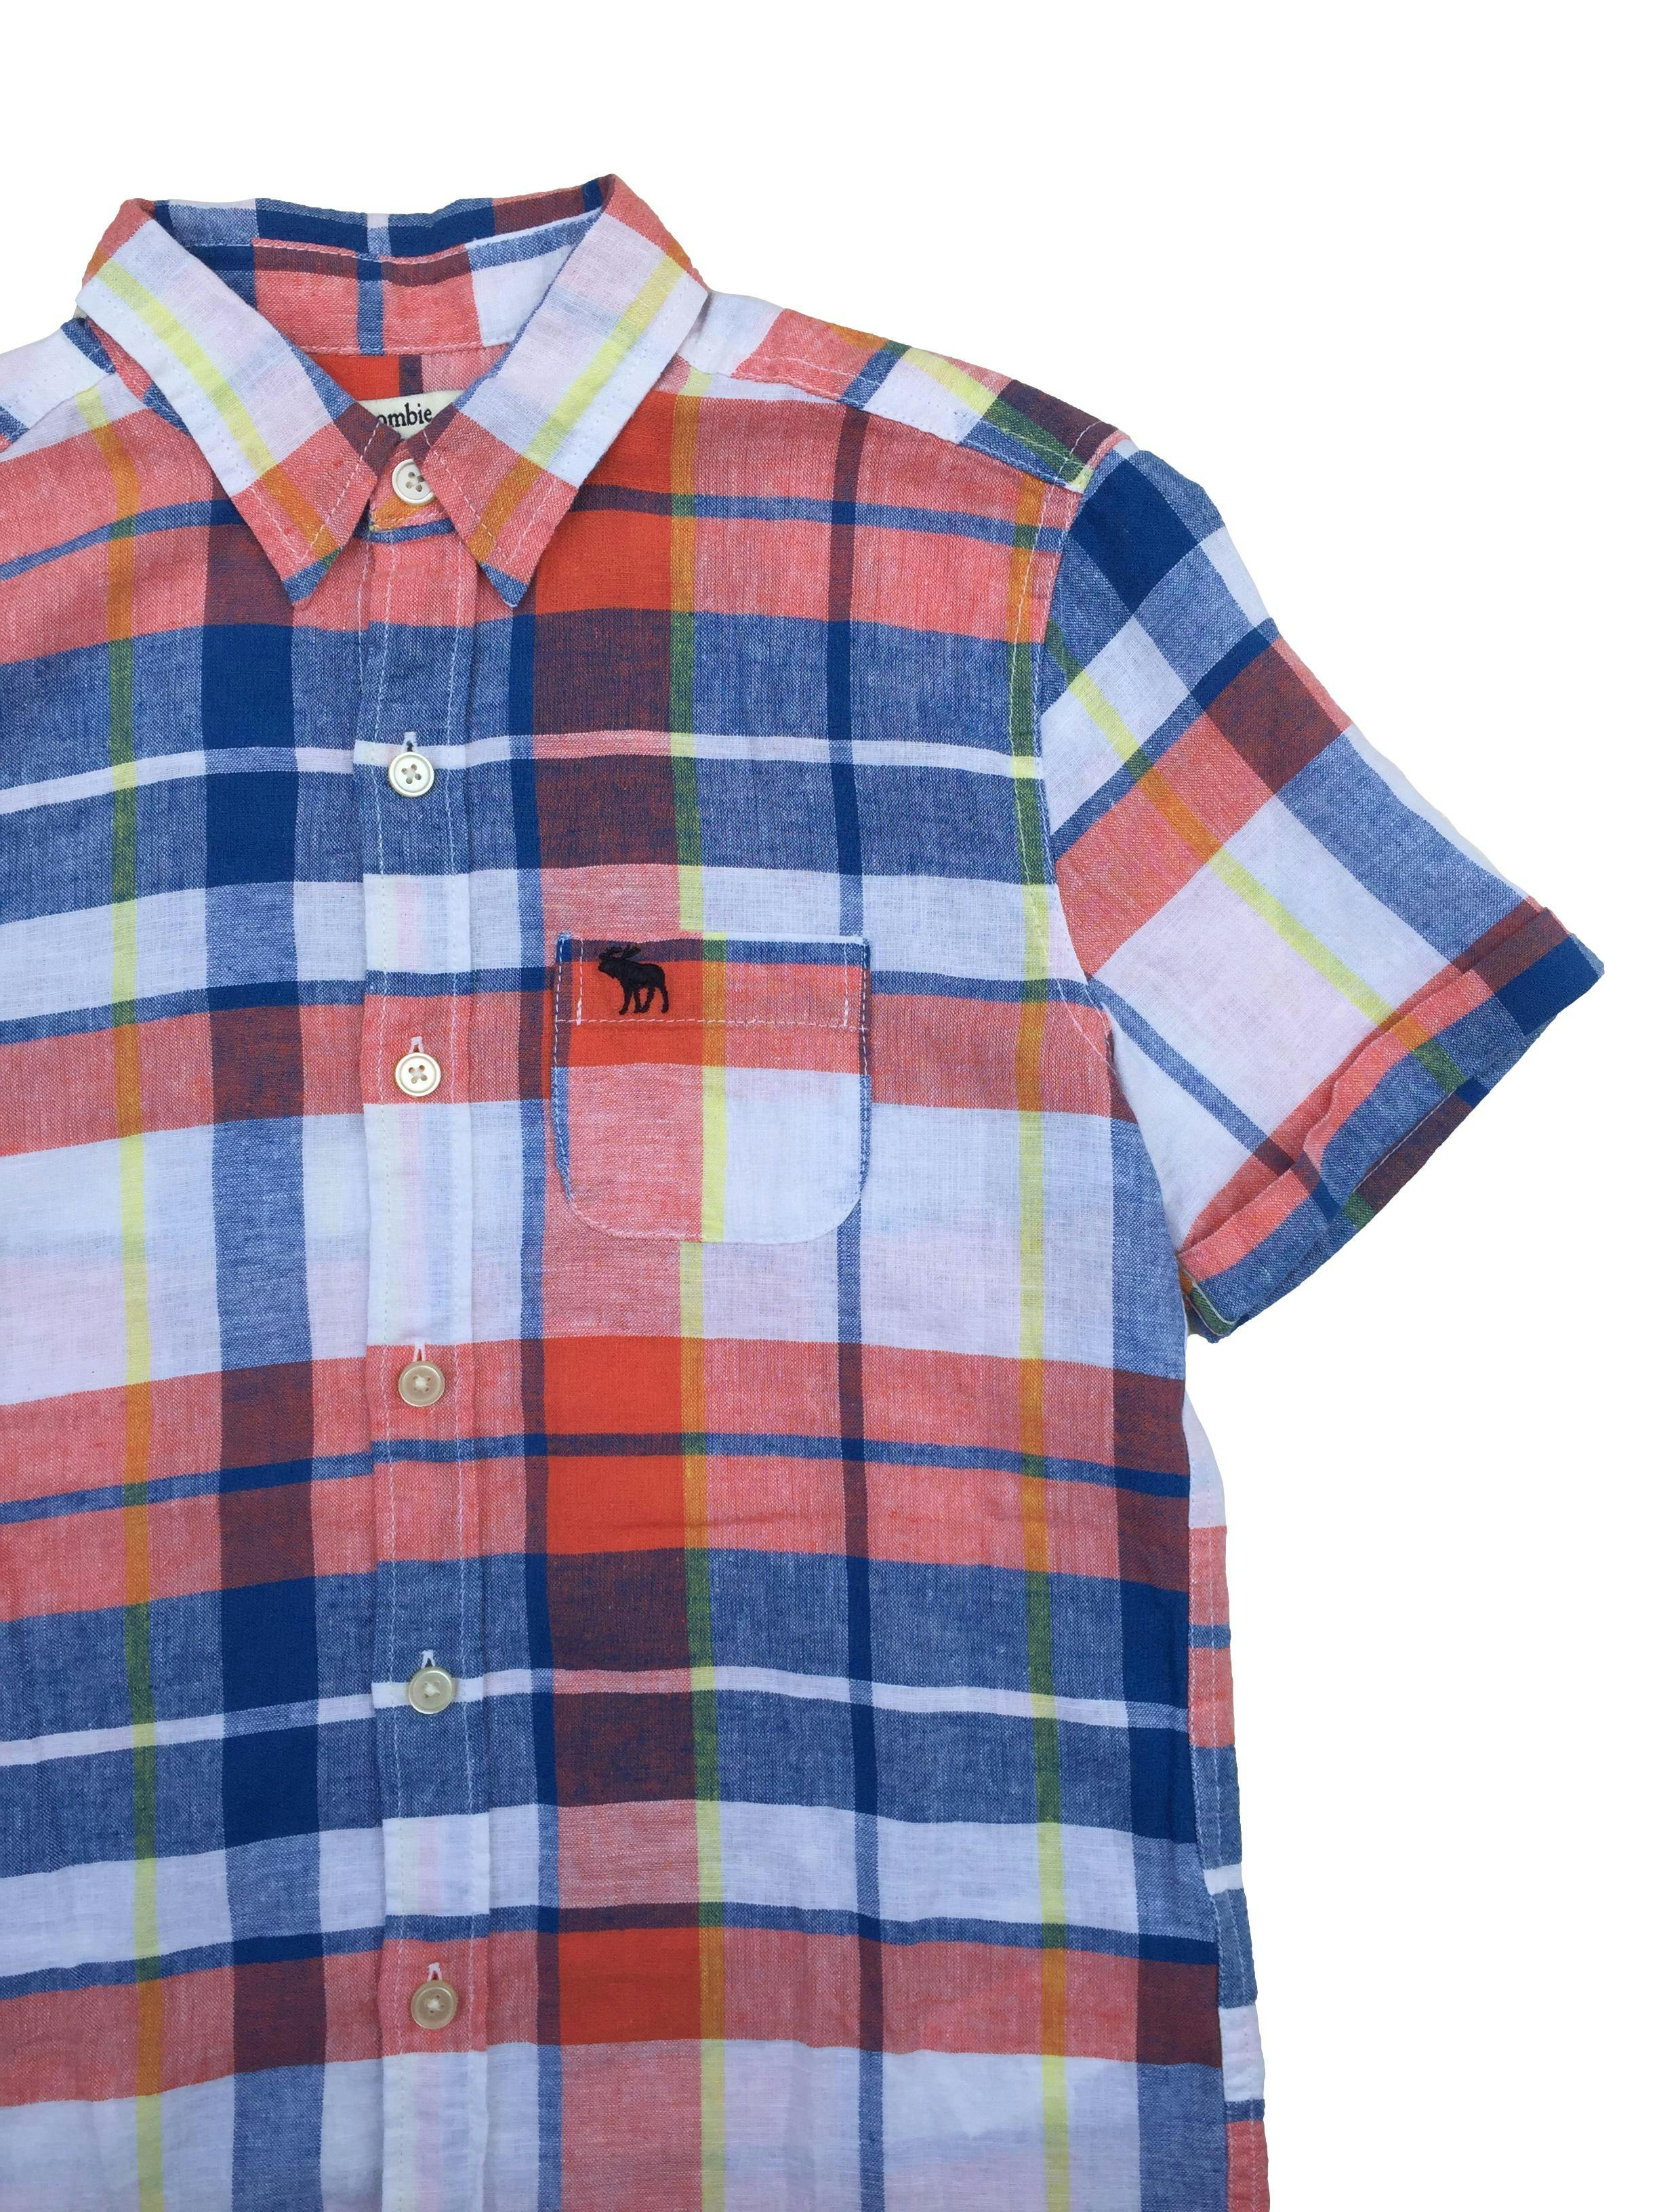 Camisa Abercrombie a cuadros anaranjados, azules y blancos, mezcla de lino y algodón.